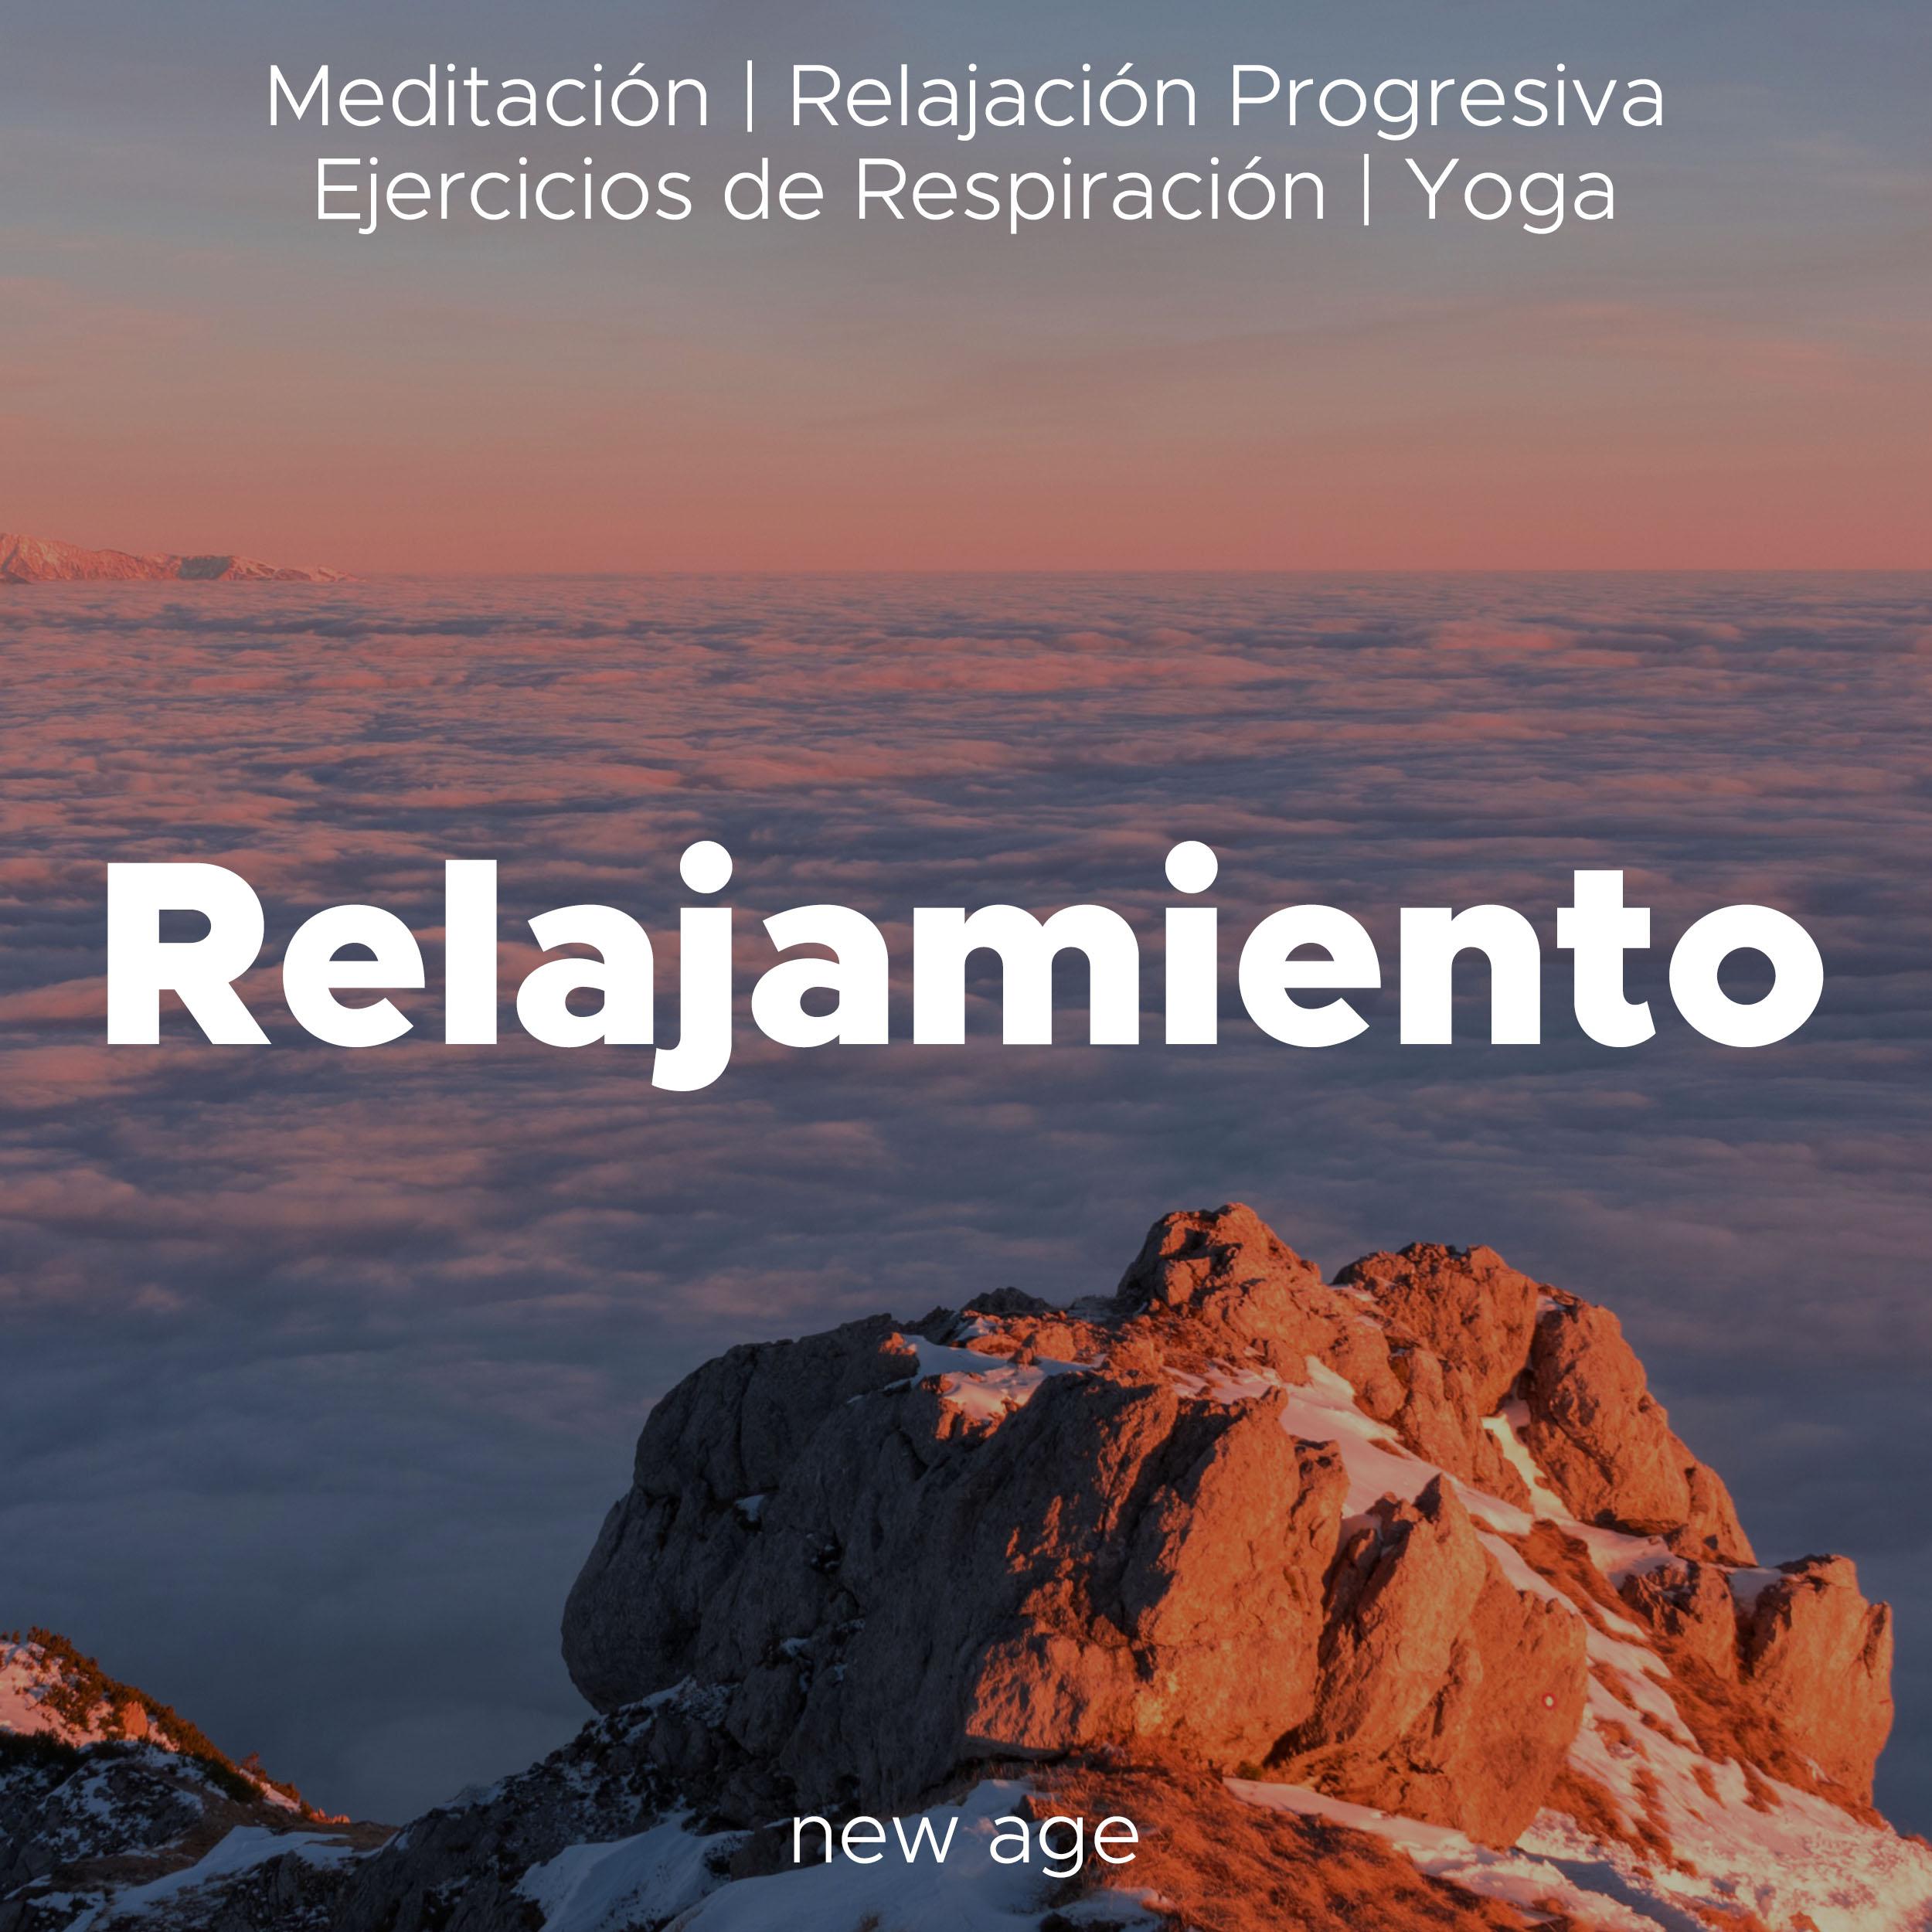 Relajamiento - Musica Relajante para la Meditación, Relajación Progresiva, Ejercicios de Respiración, Yoga